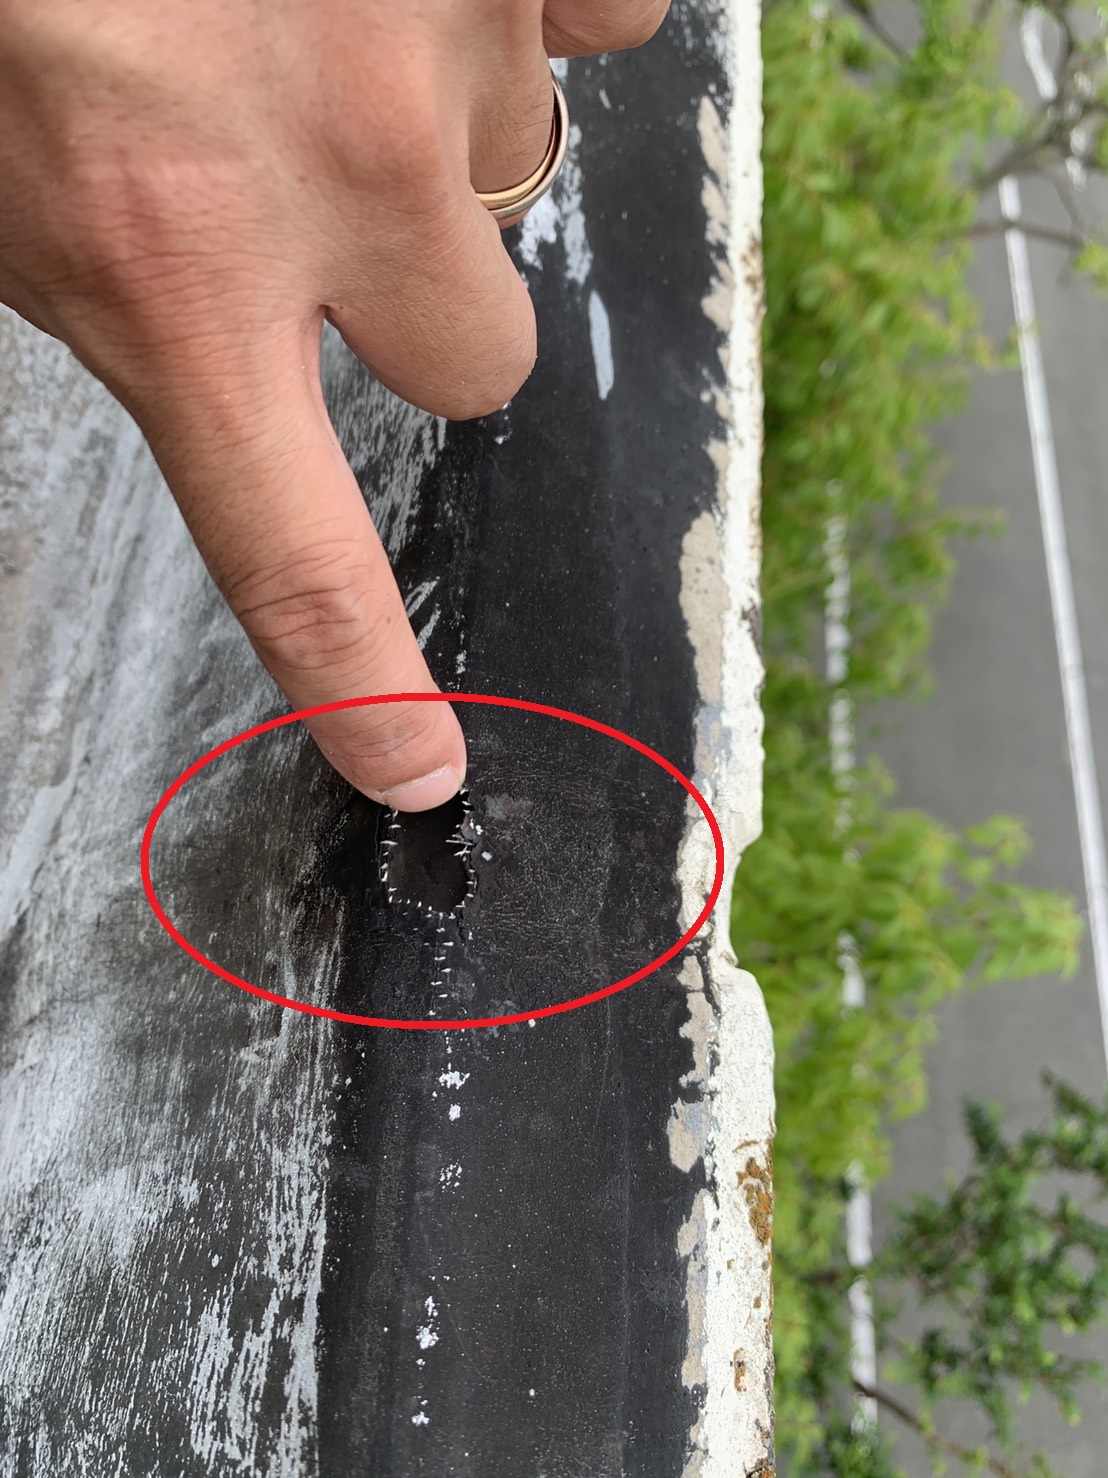 三木市で屋上から雨漏りしている穴の開いた防水